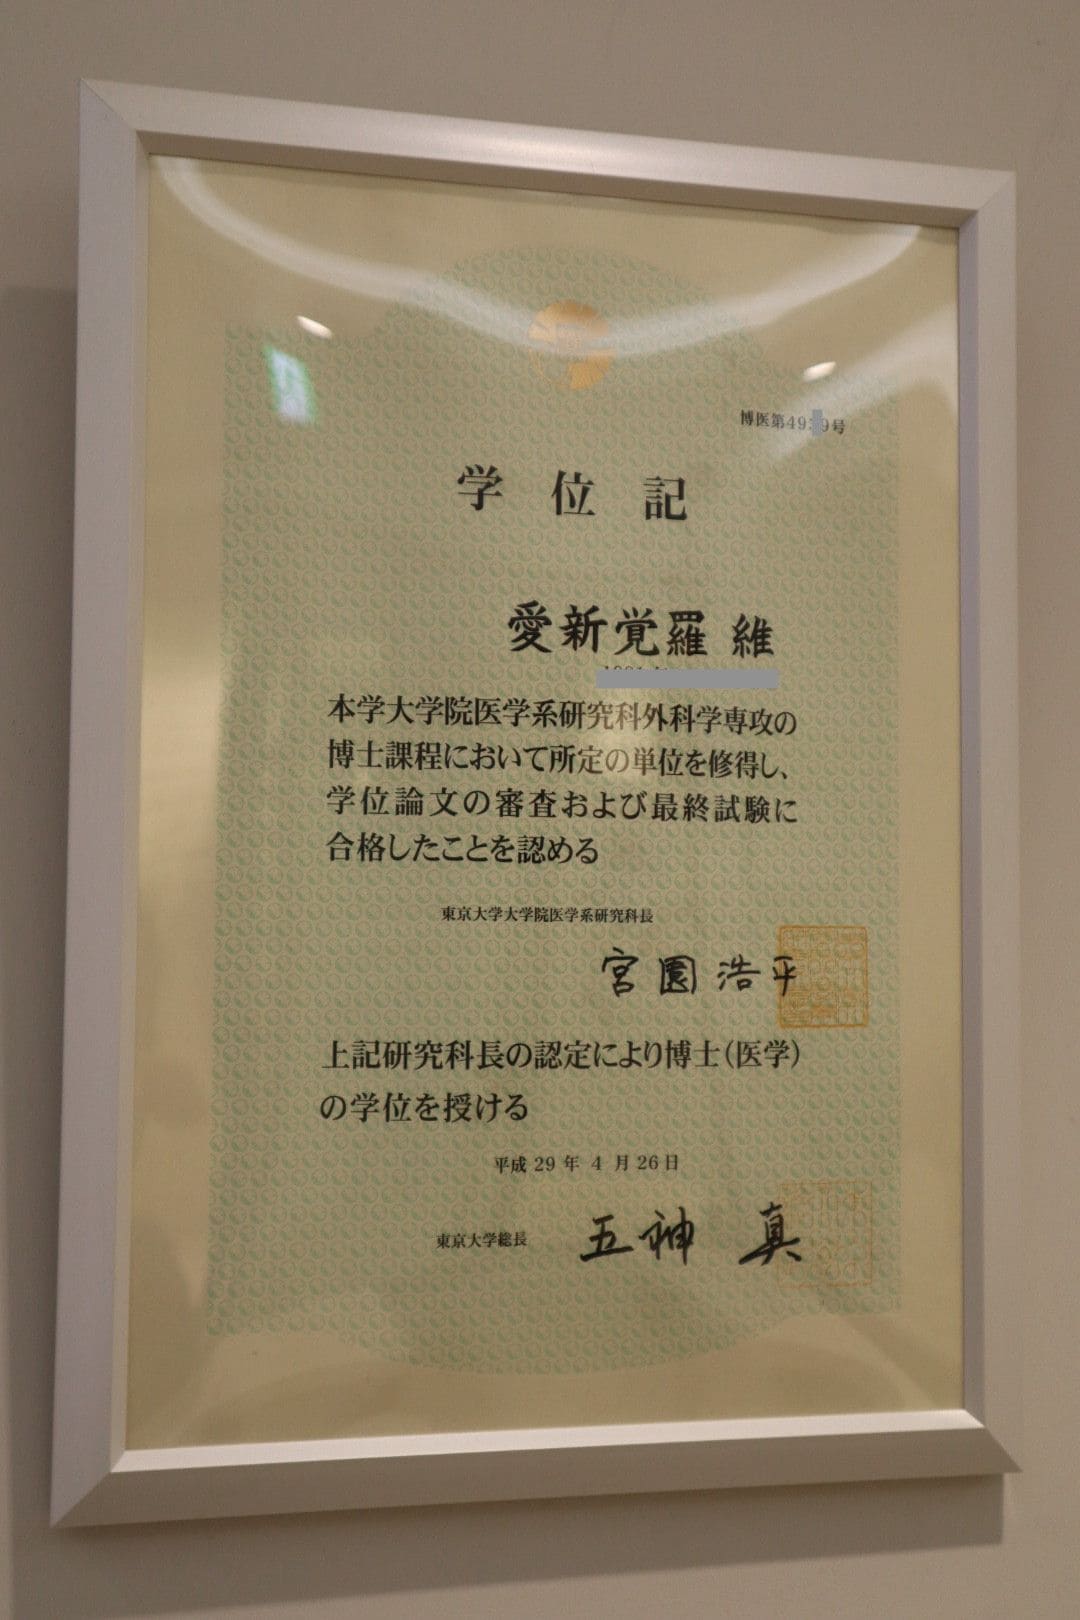 病院内に掲げられている東大医学博士の学位記。医師免許と博士号はいずれも愛新覚羅姓で取得。中国国内を含む海外での学会発表や論文執筆も「Wei Aixinjueluo」名義だ。（著者撮影）